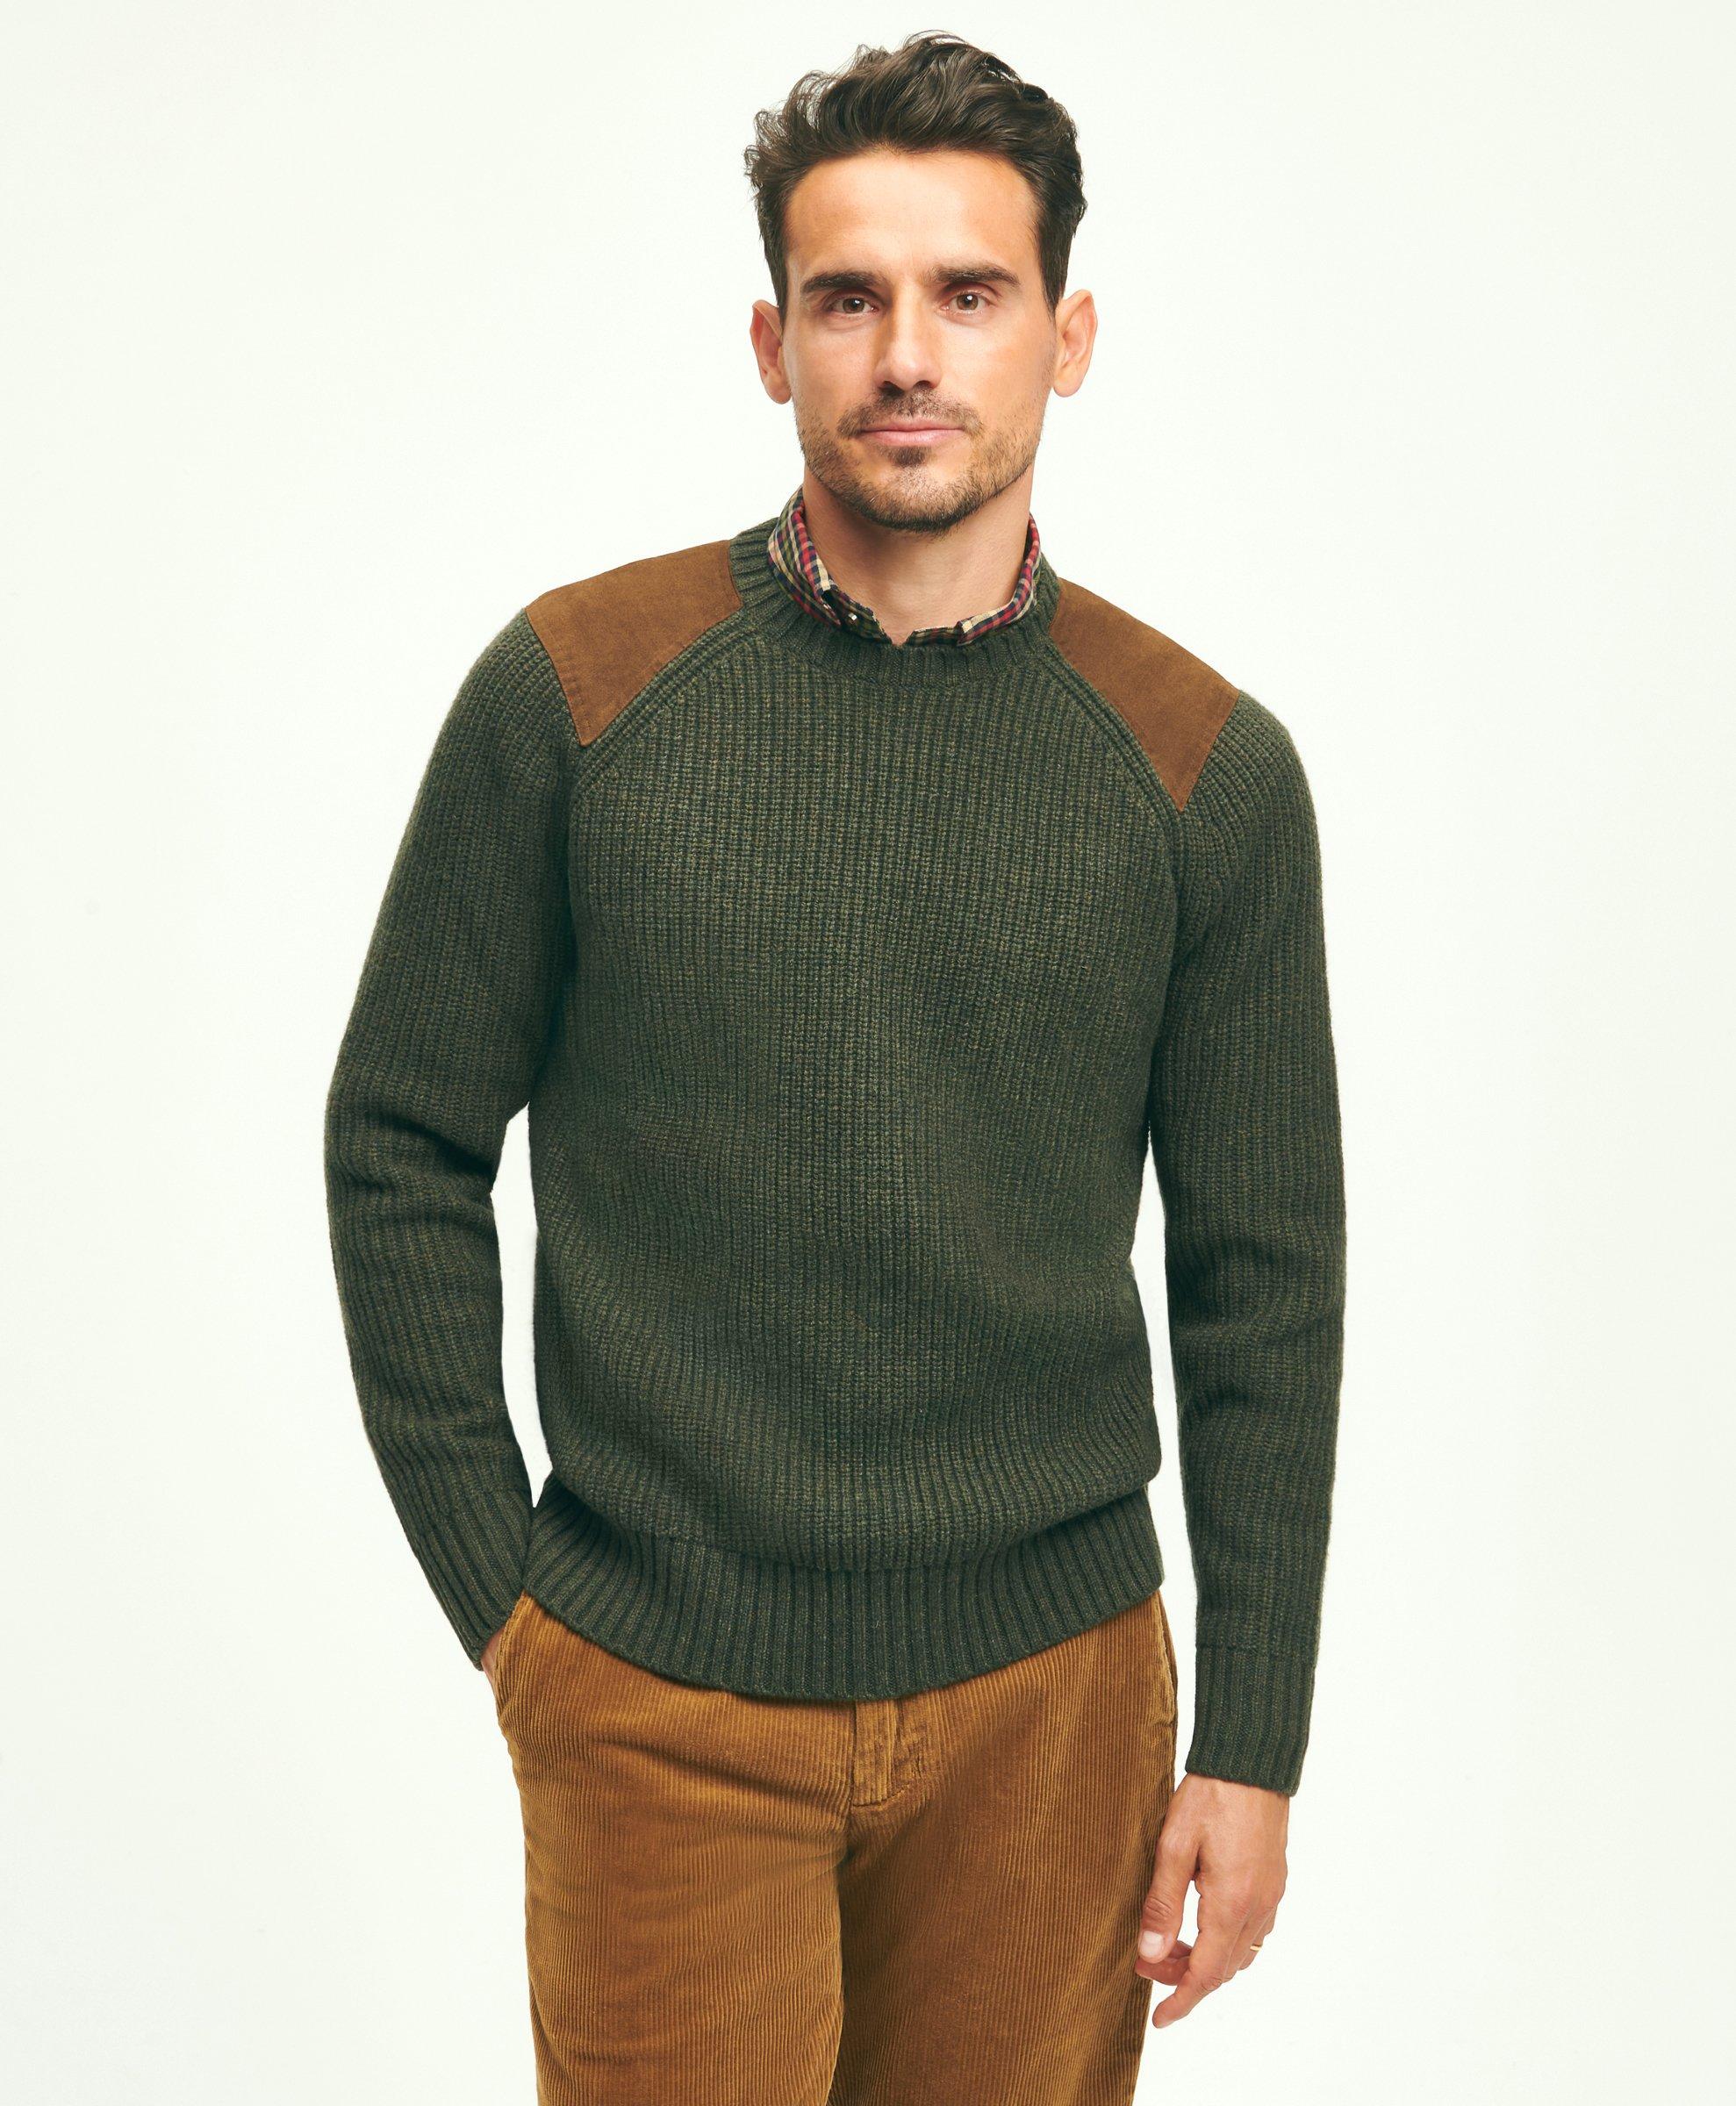 Chain Detail Patch Sweater - Luxury Knitwear - Ready to Wear